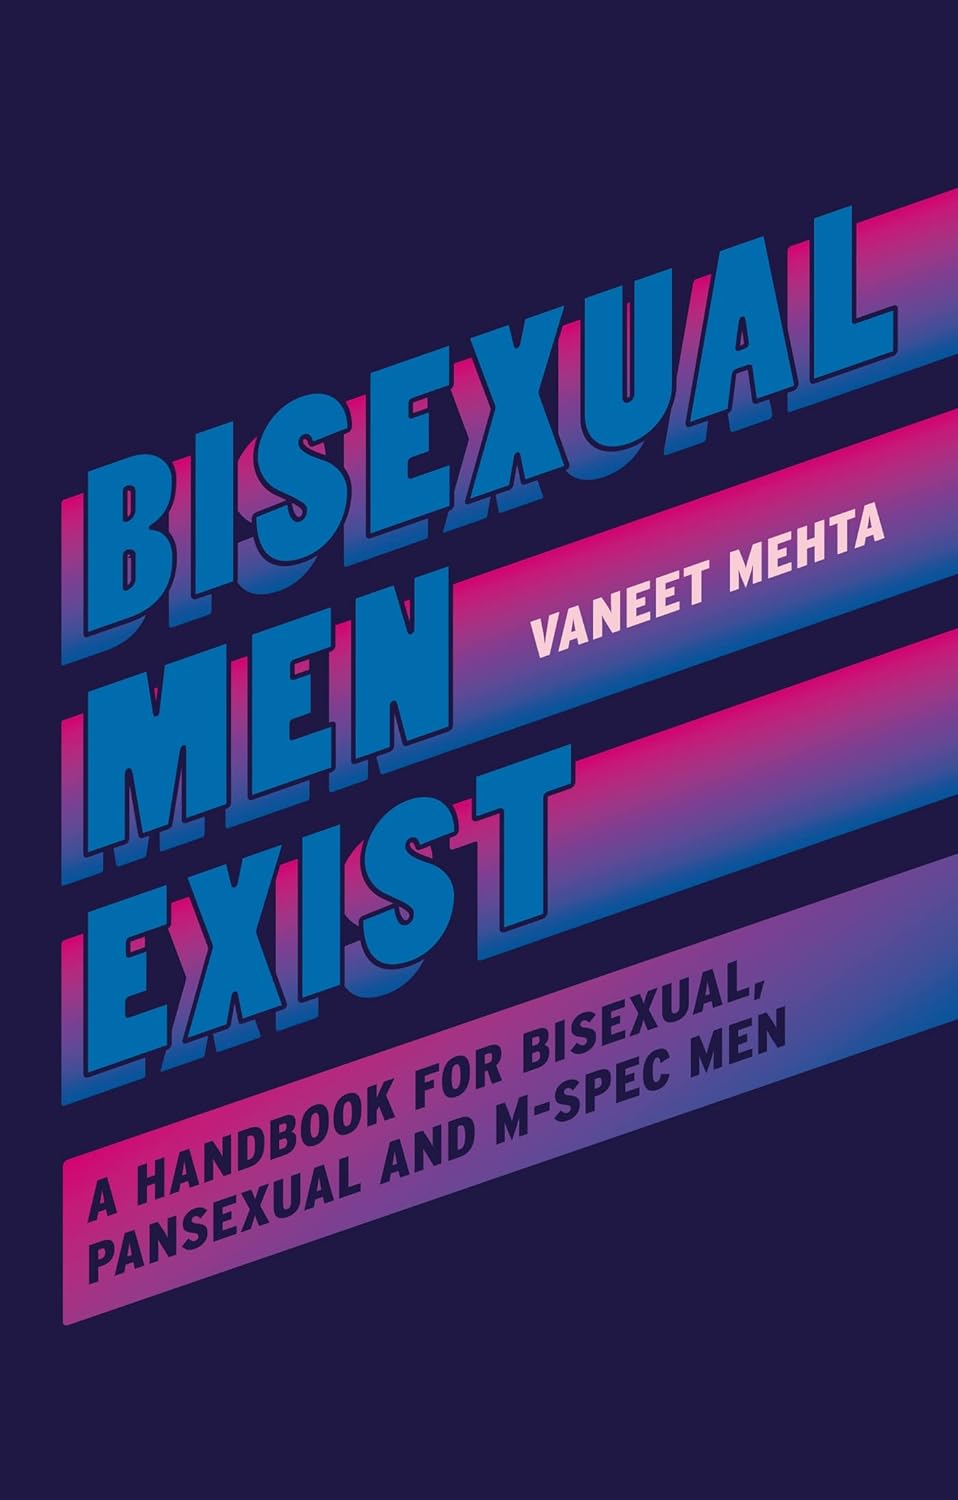 Bisexual men exists: a handbook for bisexual, pansexual and m-spec men - Vaneet Mehta